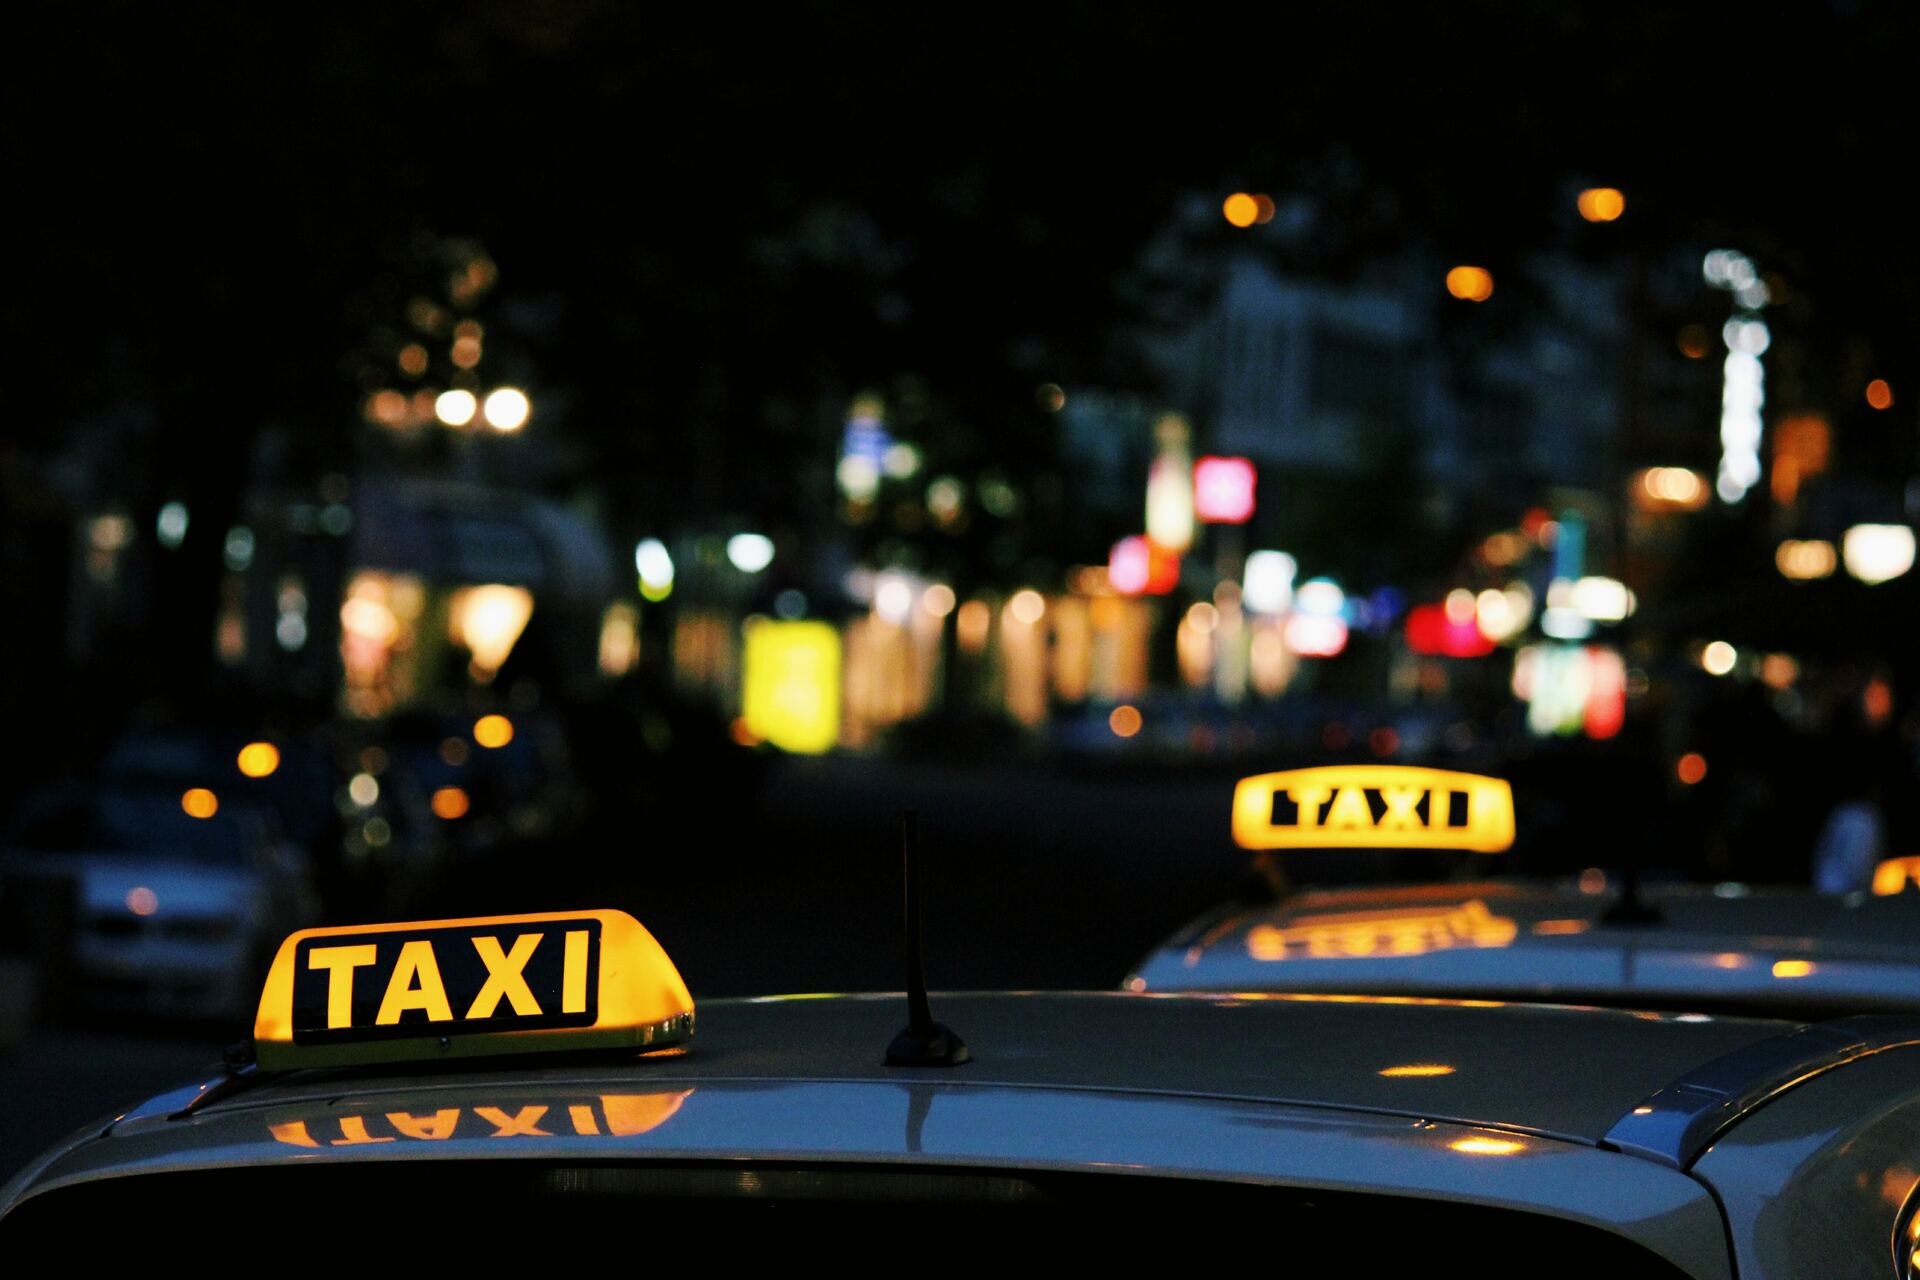 В Челябинске таксист украл деньги у пассажирки, которые та предлагала за секс